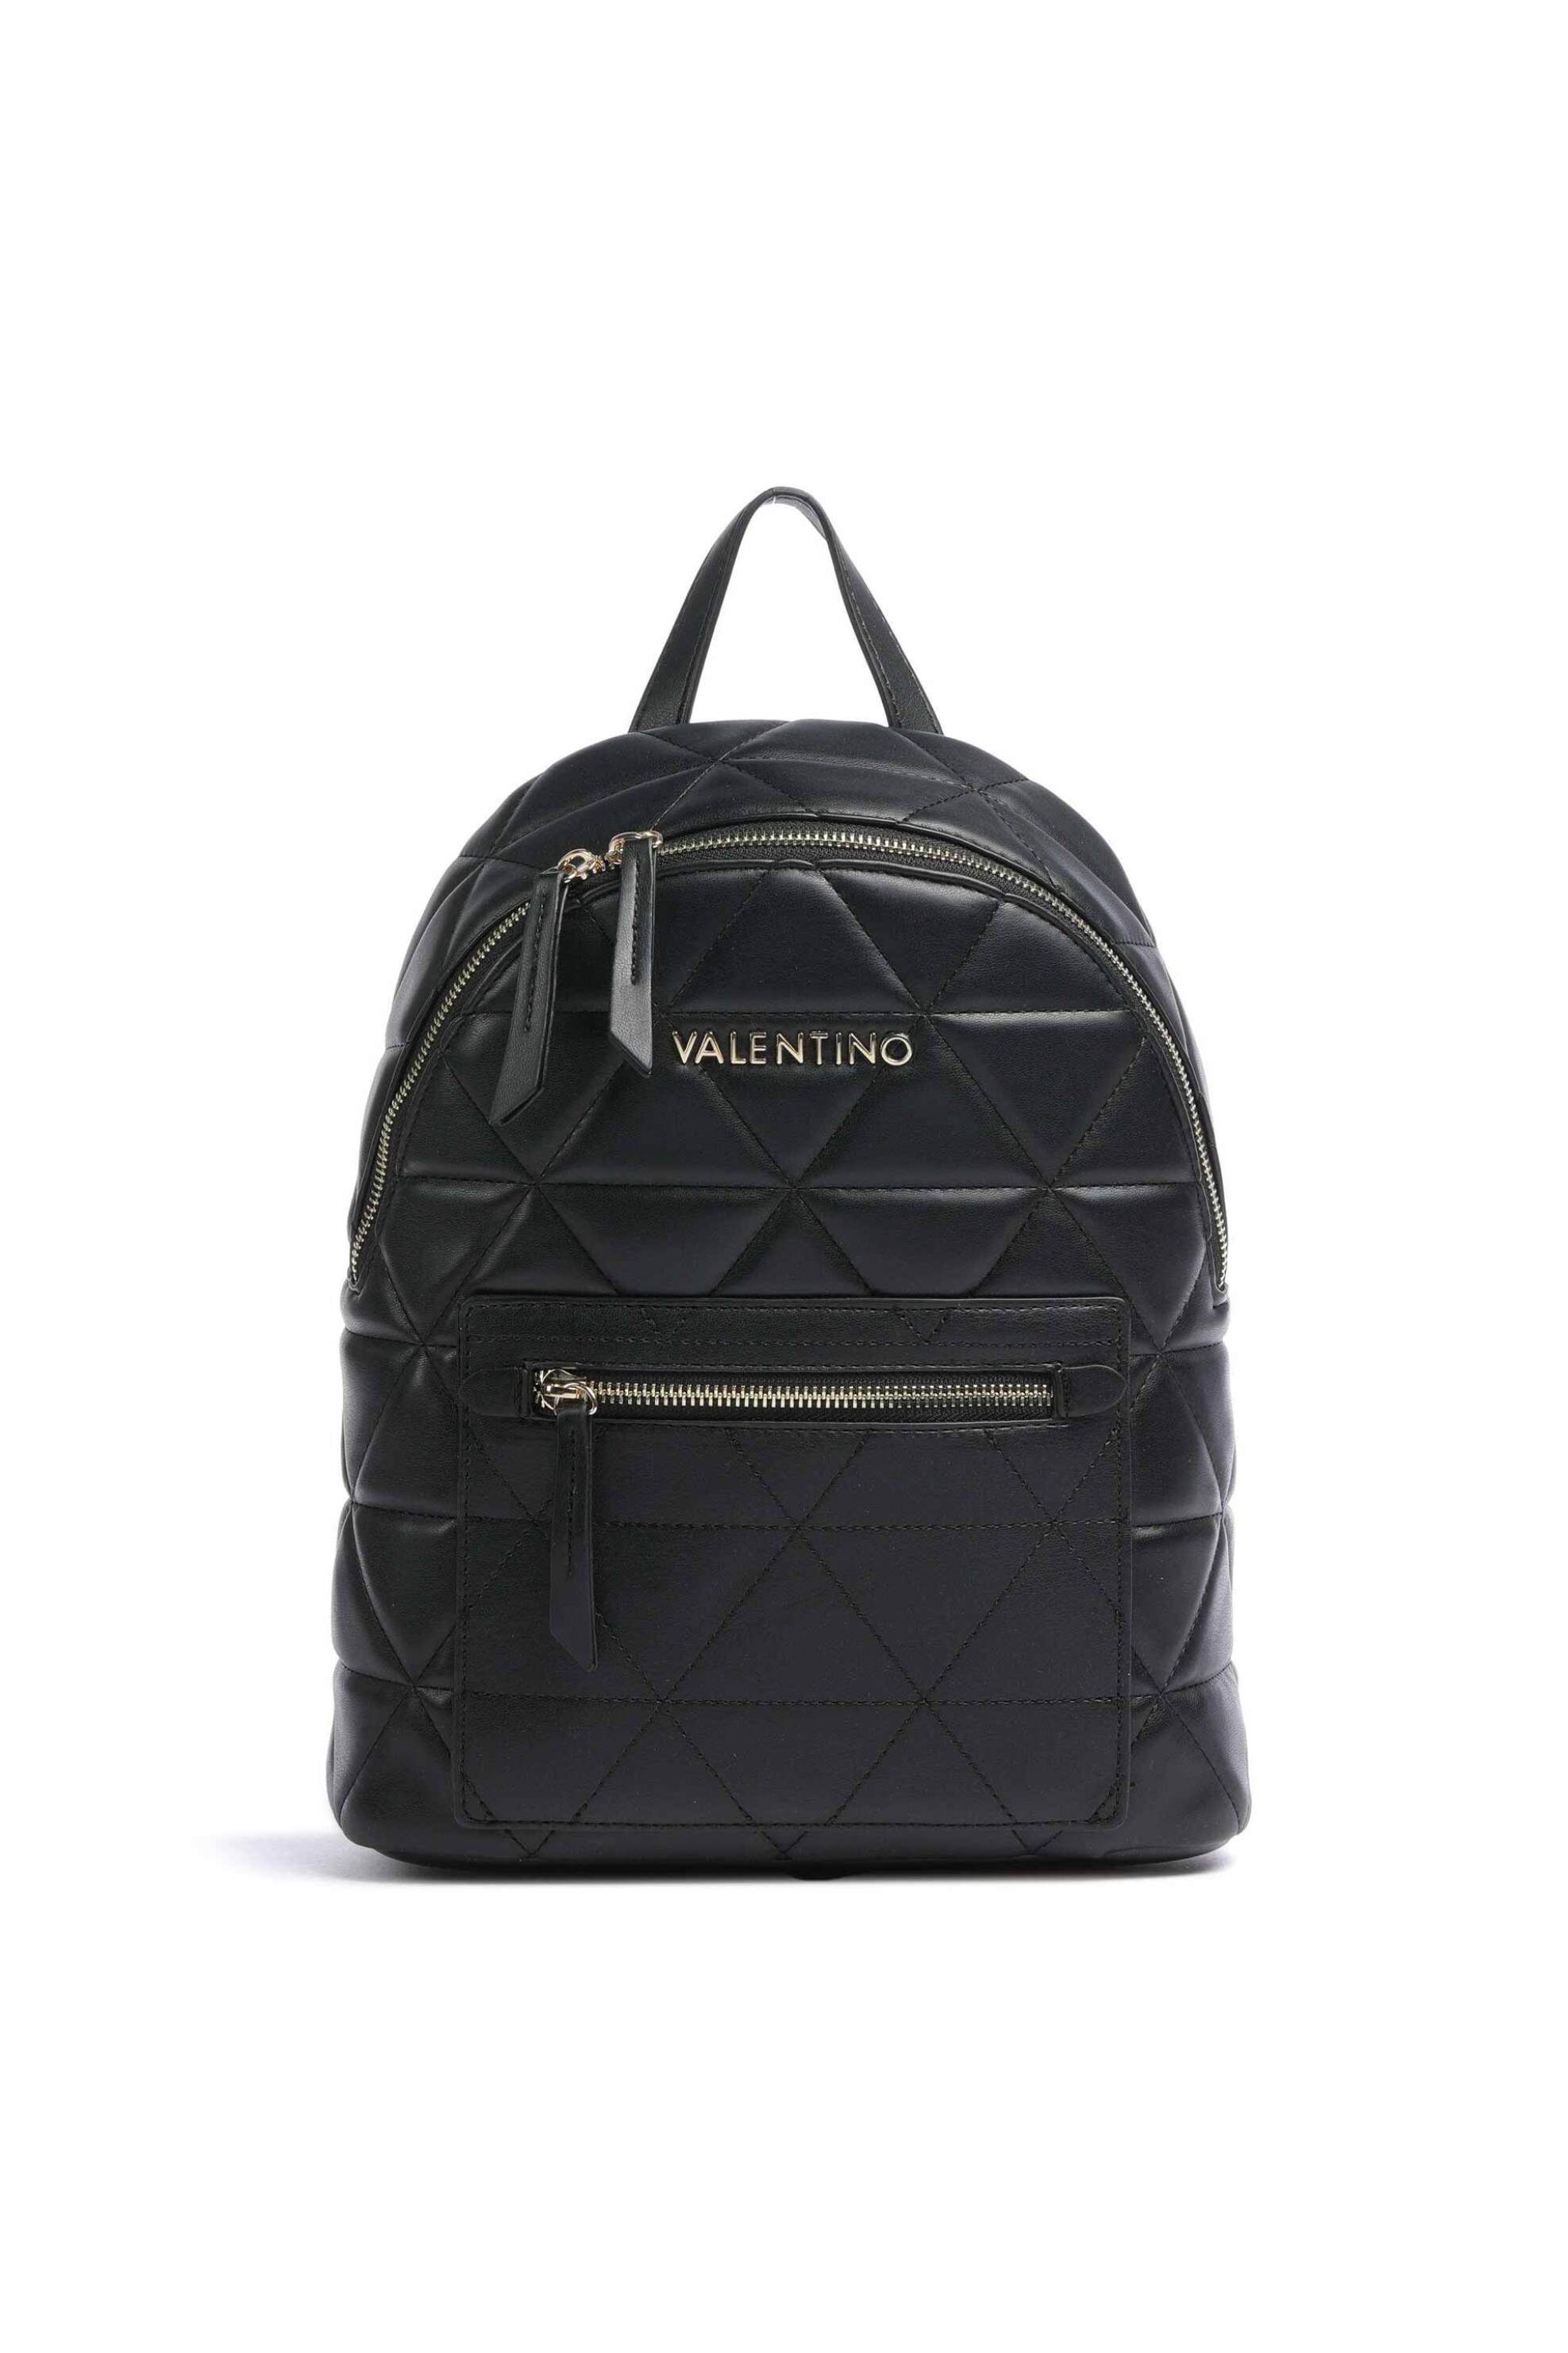 Γυναίκα > ΤΣΑΝΤΕΣ > Σακίδια & Backpacks Valentino γυναικείο backpack μονόχρωμο με ανάγλυφο γεωμετρικό pattern "Carnaby" - 55KVBS7LO03/CAR Μαύρο